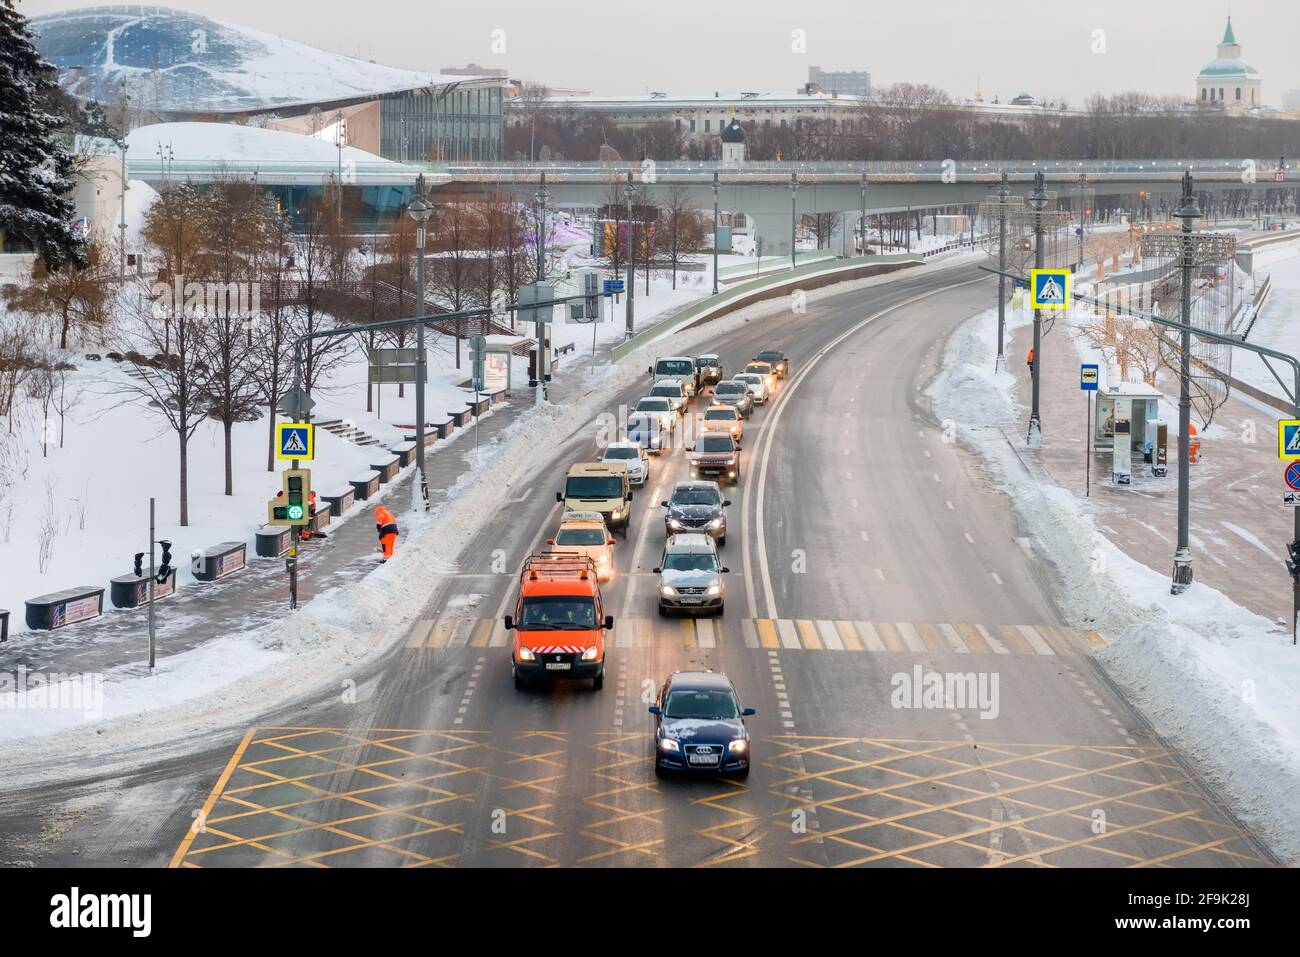 Moscou, Russie - 17 janvier 2021 : vue du remblai Moskvoretskaya, des voitures et d'un gratte-ciel sur le remblai Kotelnicheskaya sur un morni hivernal gelé Banque D'Images